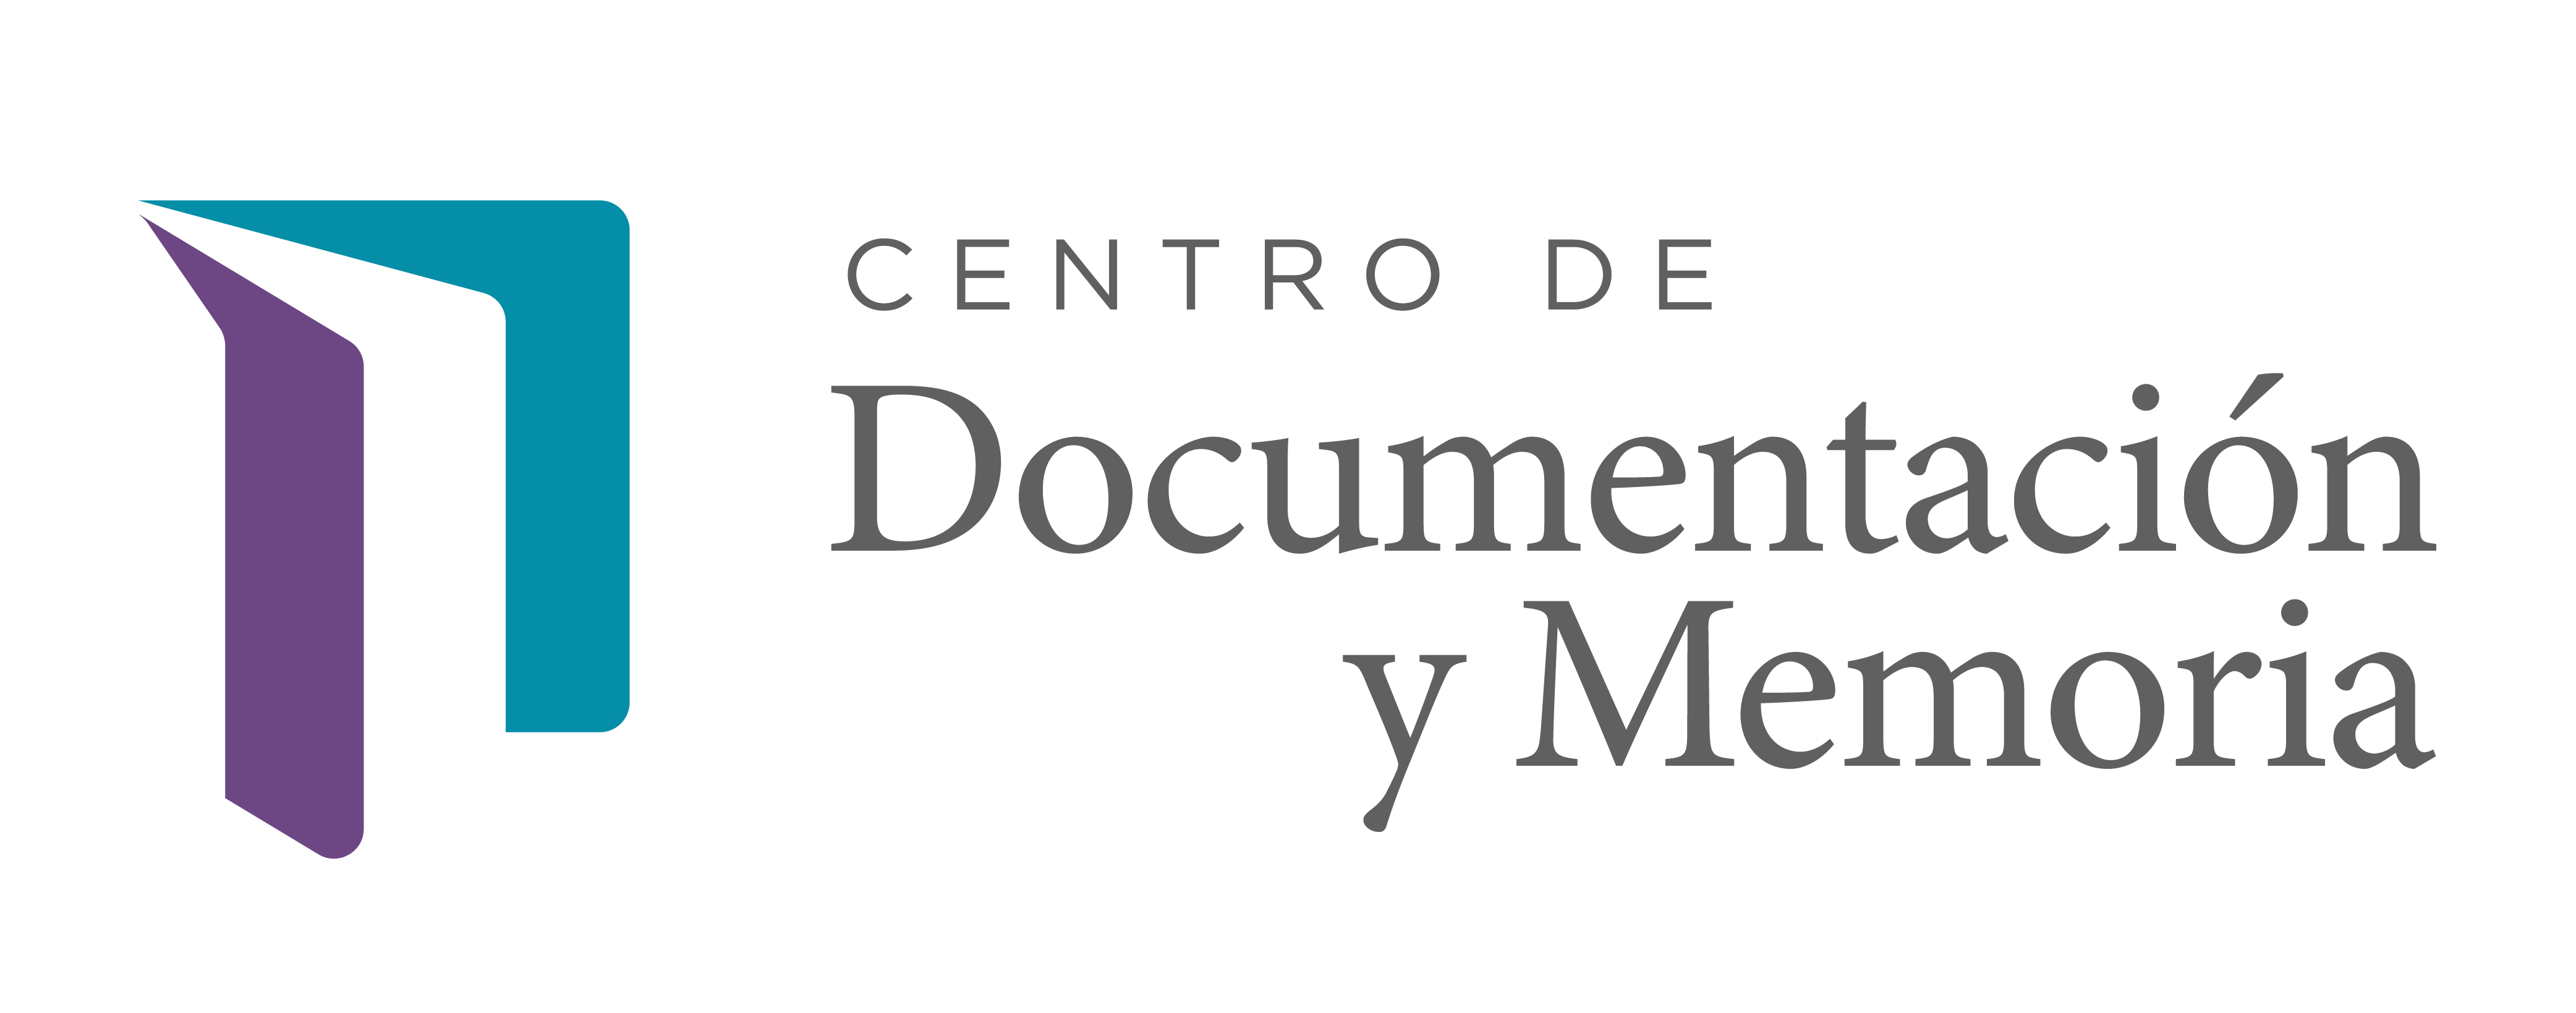 Centro de Documentación y Memoria